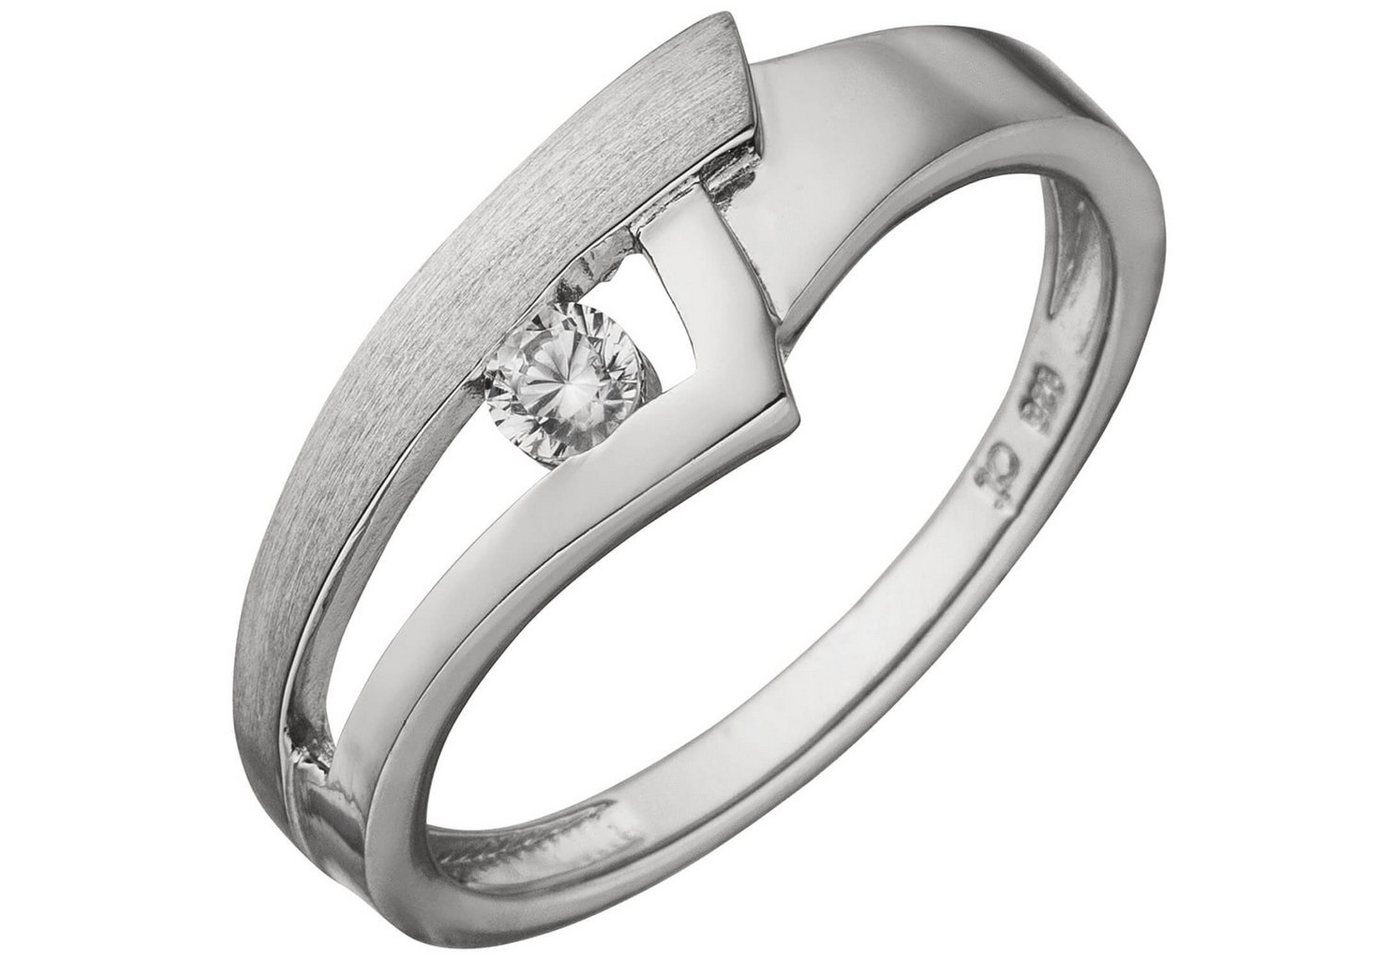 Schmuck Krone Silberring Ring Damenring mit Zirkonia 925 Silber rhodiniert teilmattiert 7,3mm breit, Silber 925 von Schmuck Krone